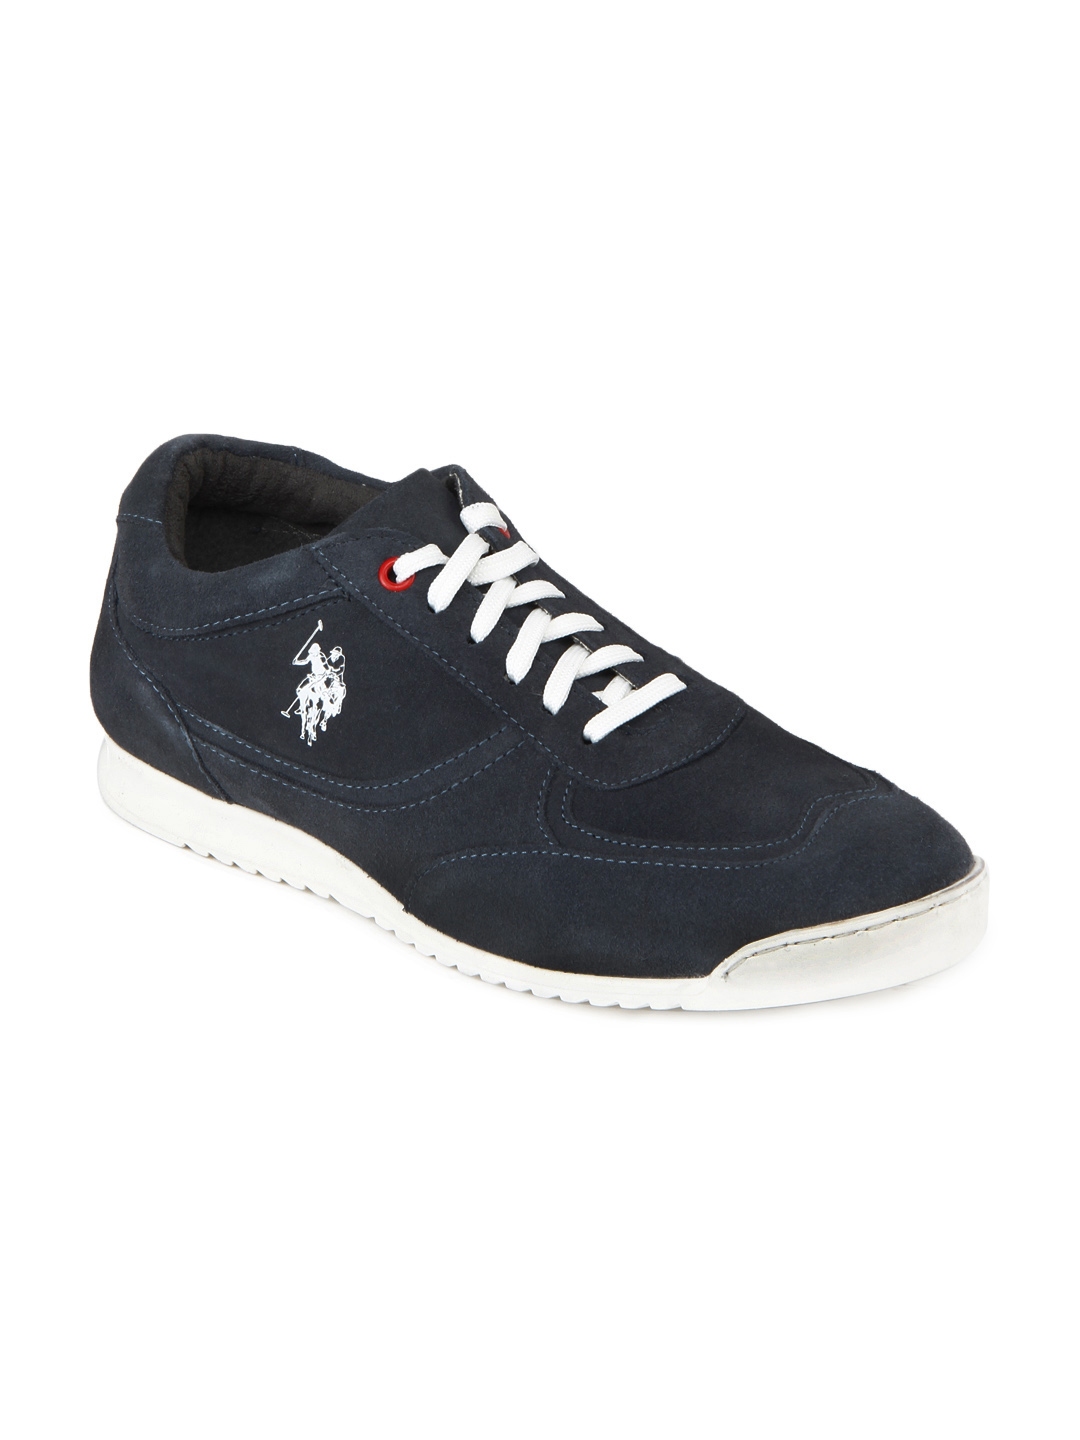 Buy U.S. Polo Assn. Men Navy Blue Ester Sneakers - Casual Shoes for Men ...